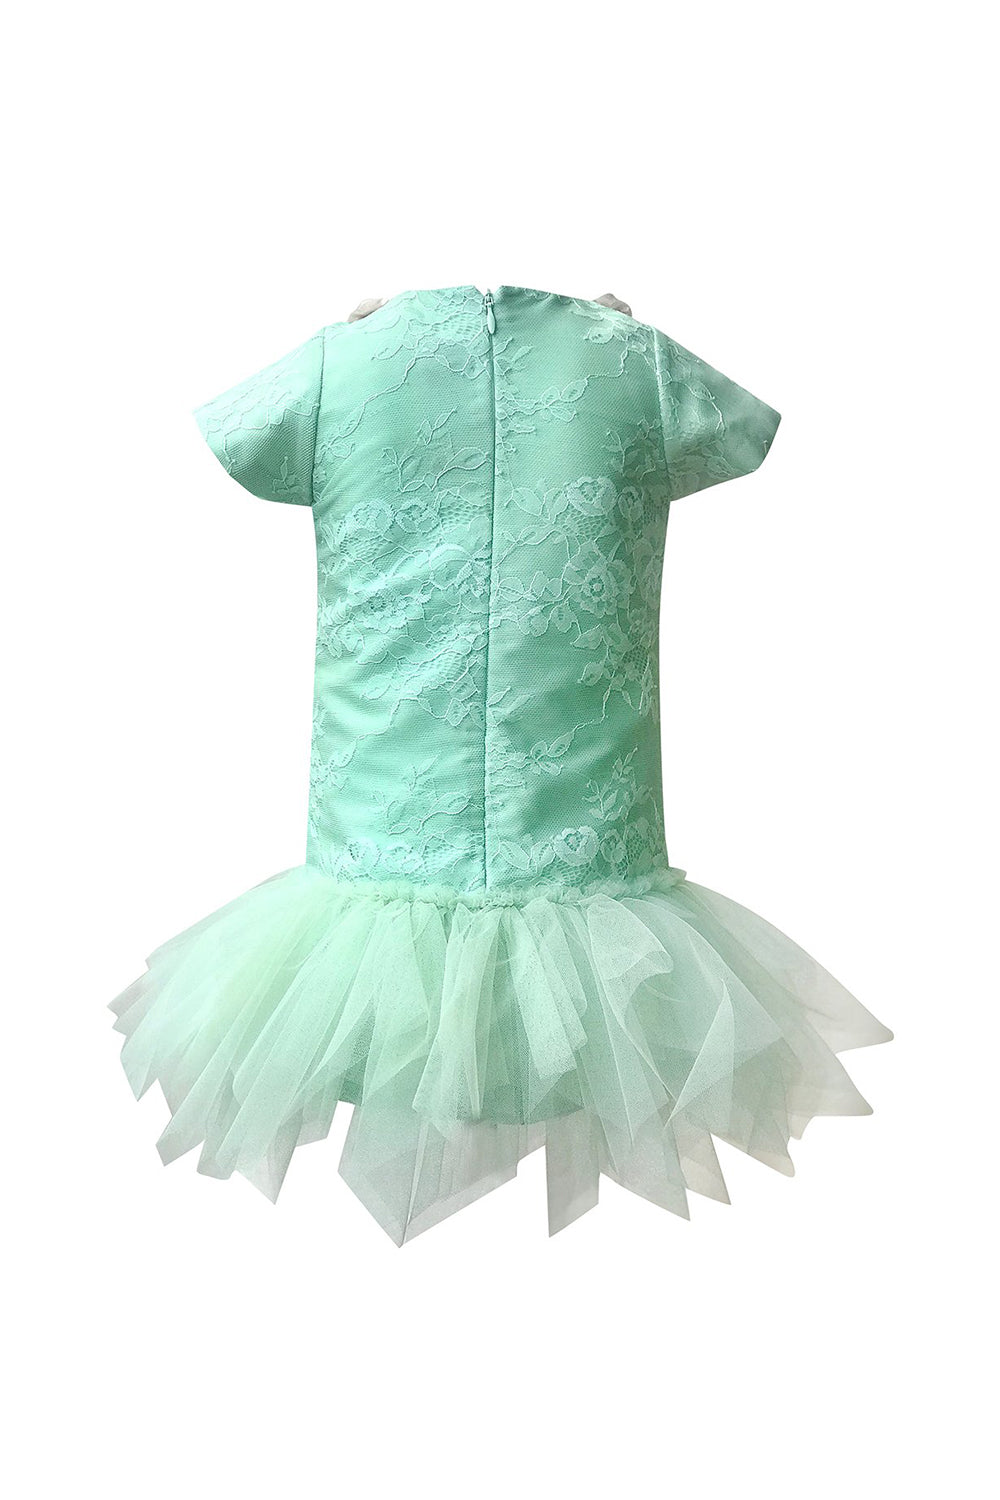 Mint Green Overlay Dress